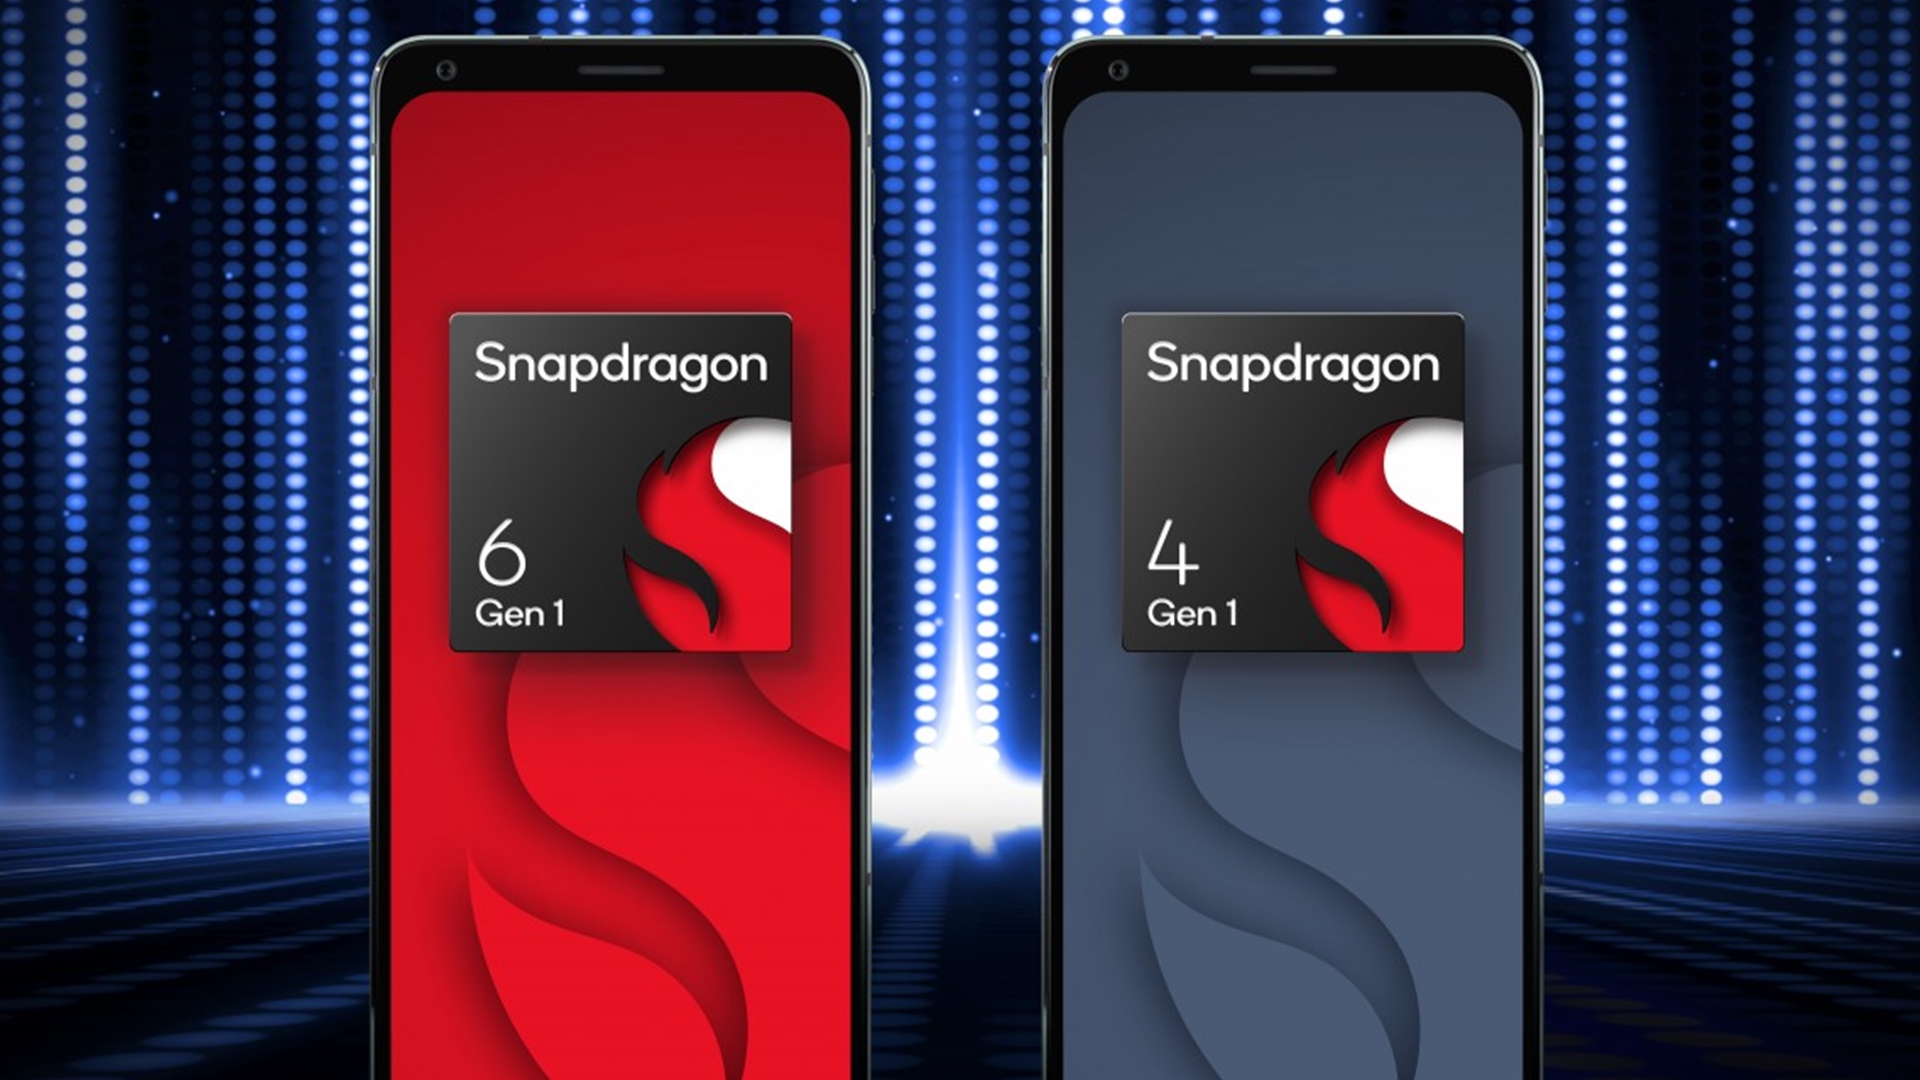 كوالكوم تكشف رسميًا عن Snapdragon 6 Gen 1 وSnapdragon 4 Gen 1